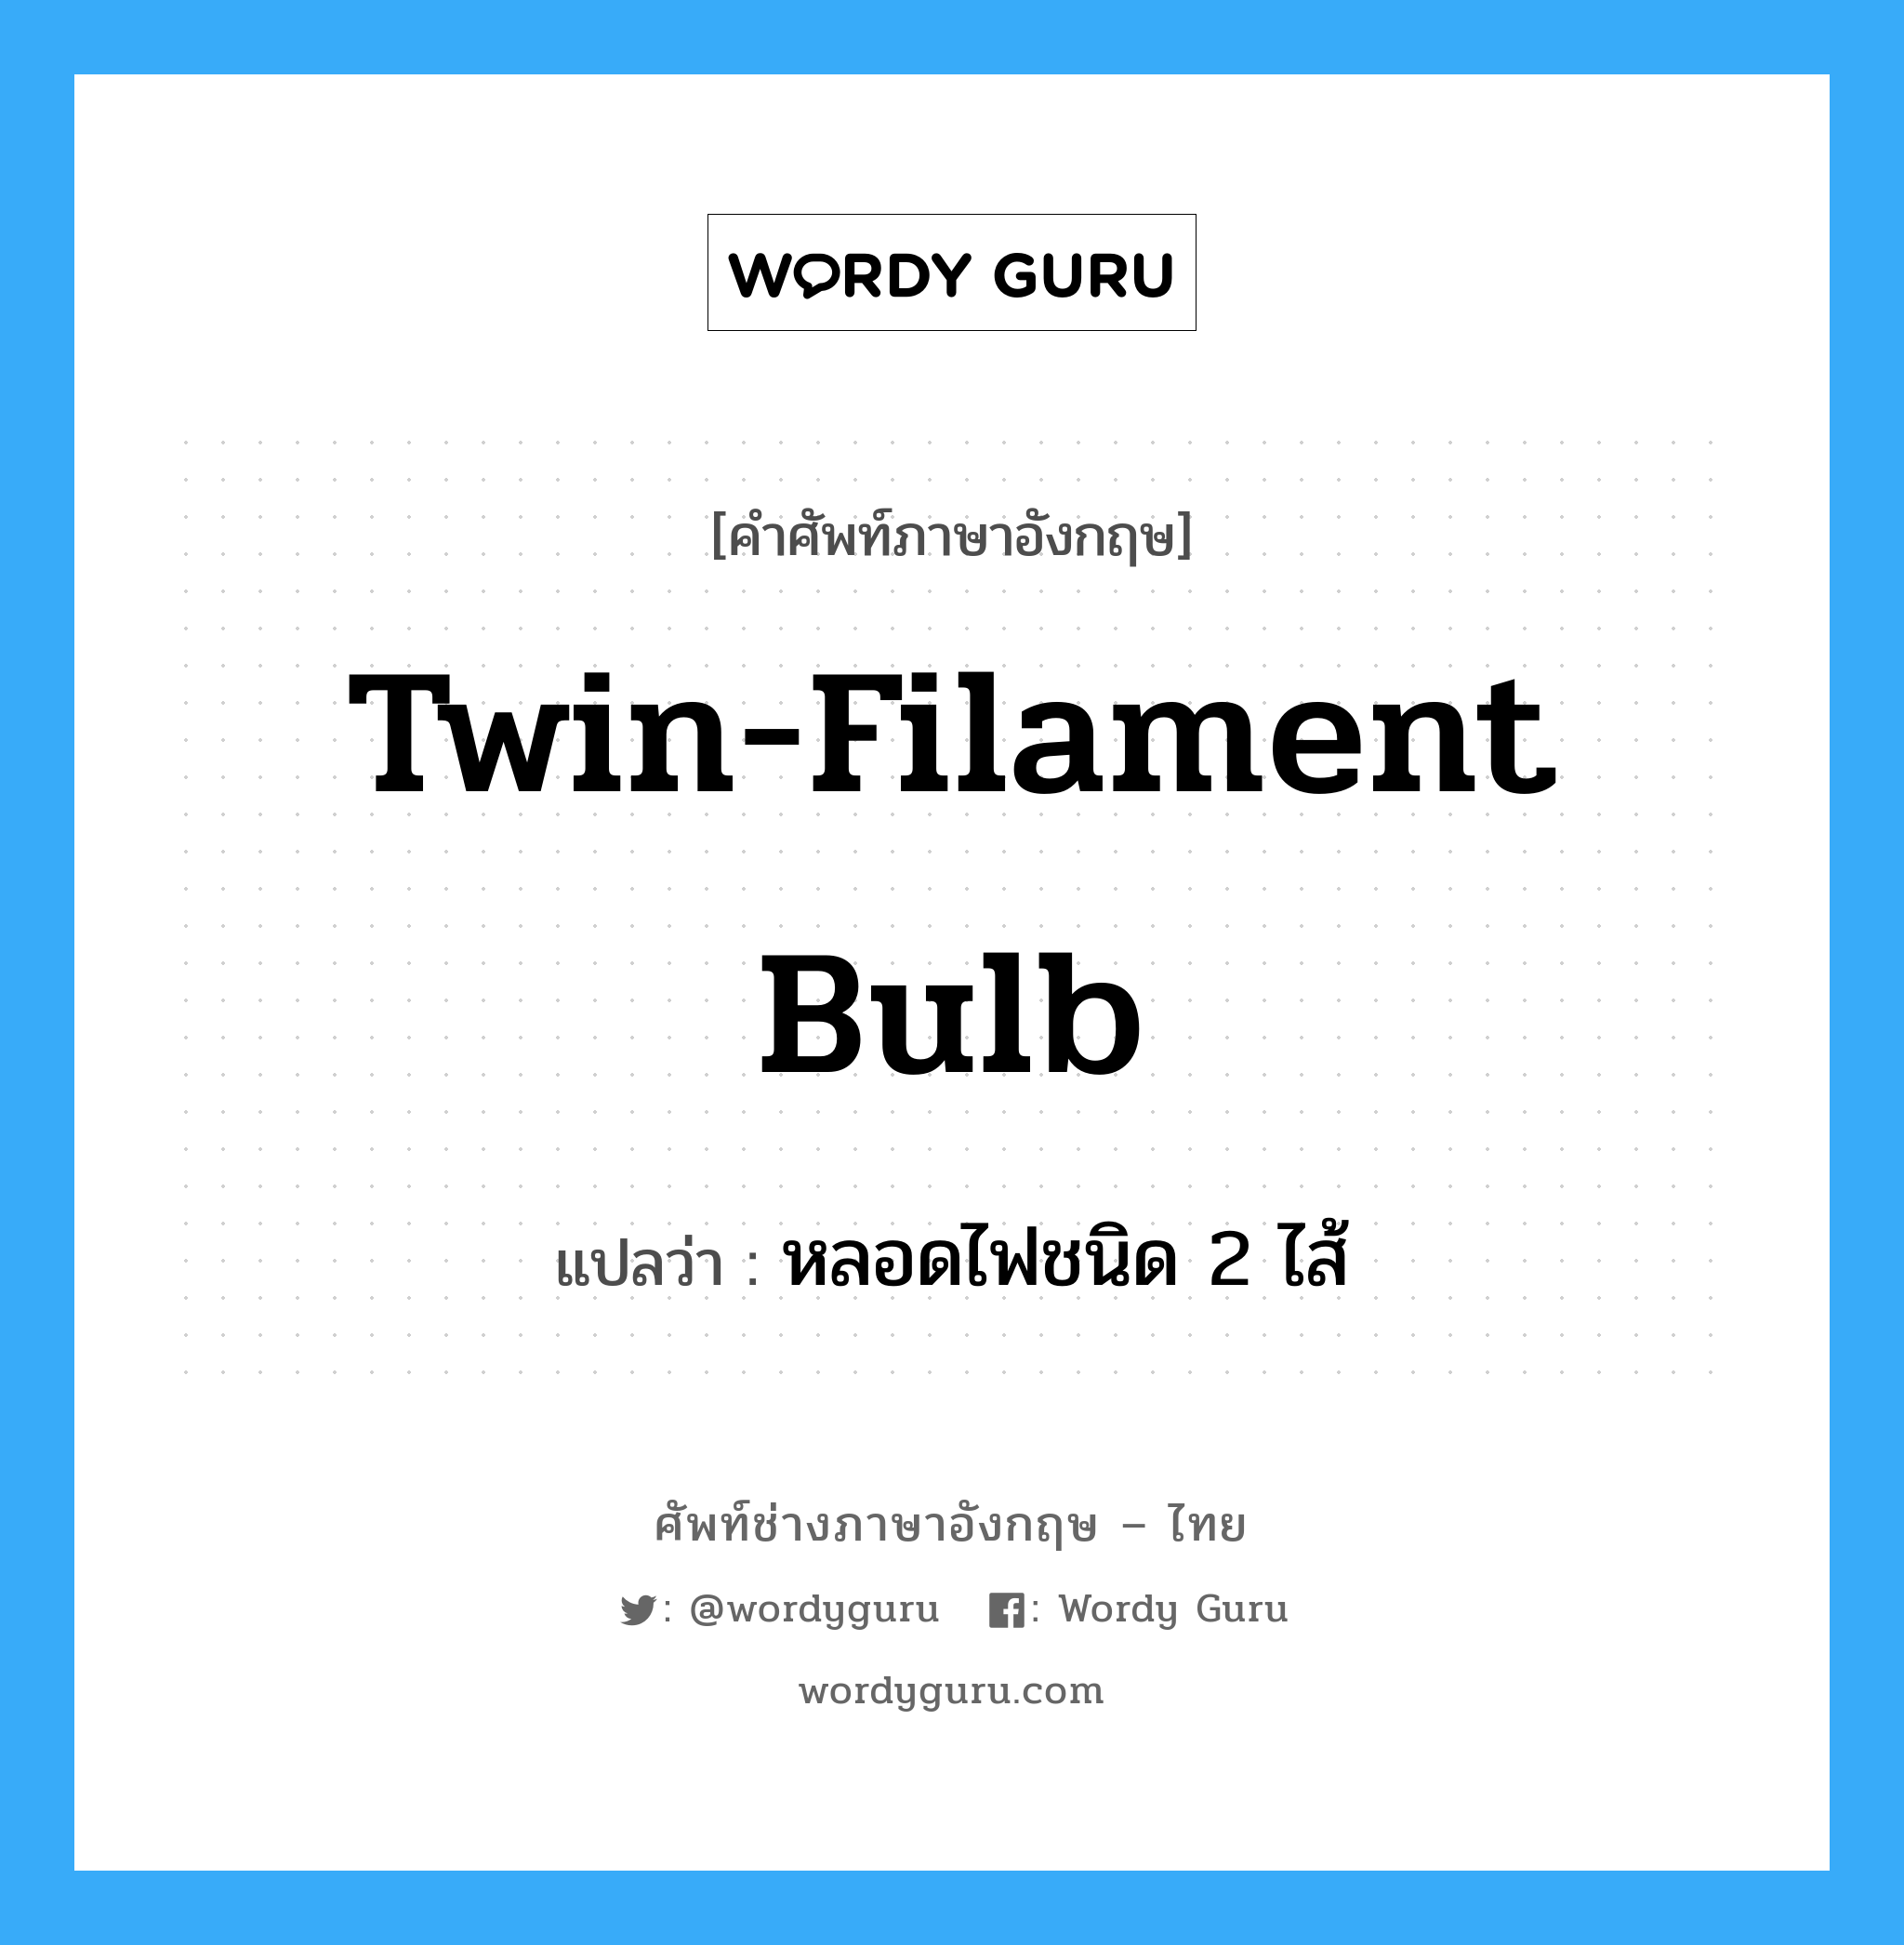 twin-filament bulb แปลว่า?, คำศัพท์ช่างภาษาอังกฤษ - ไทย twin-filament bulb คำศัพท์ภาษาอังกฤษ twin-filament bulb แปลว่า หลอดไฟชนิด 2 ไส้